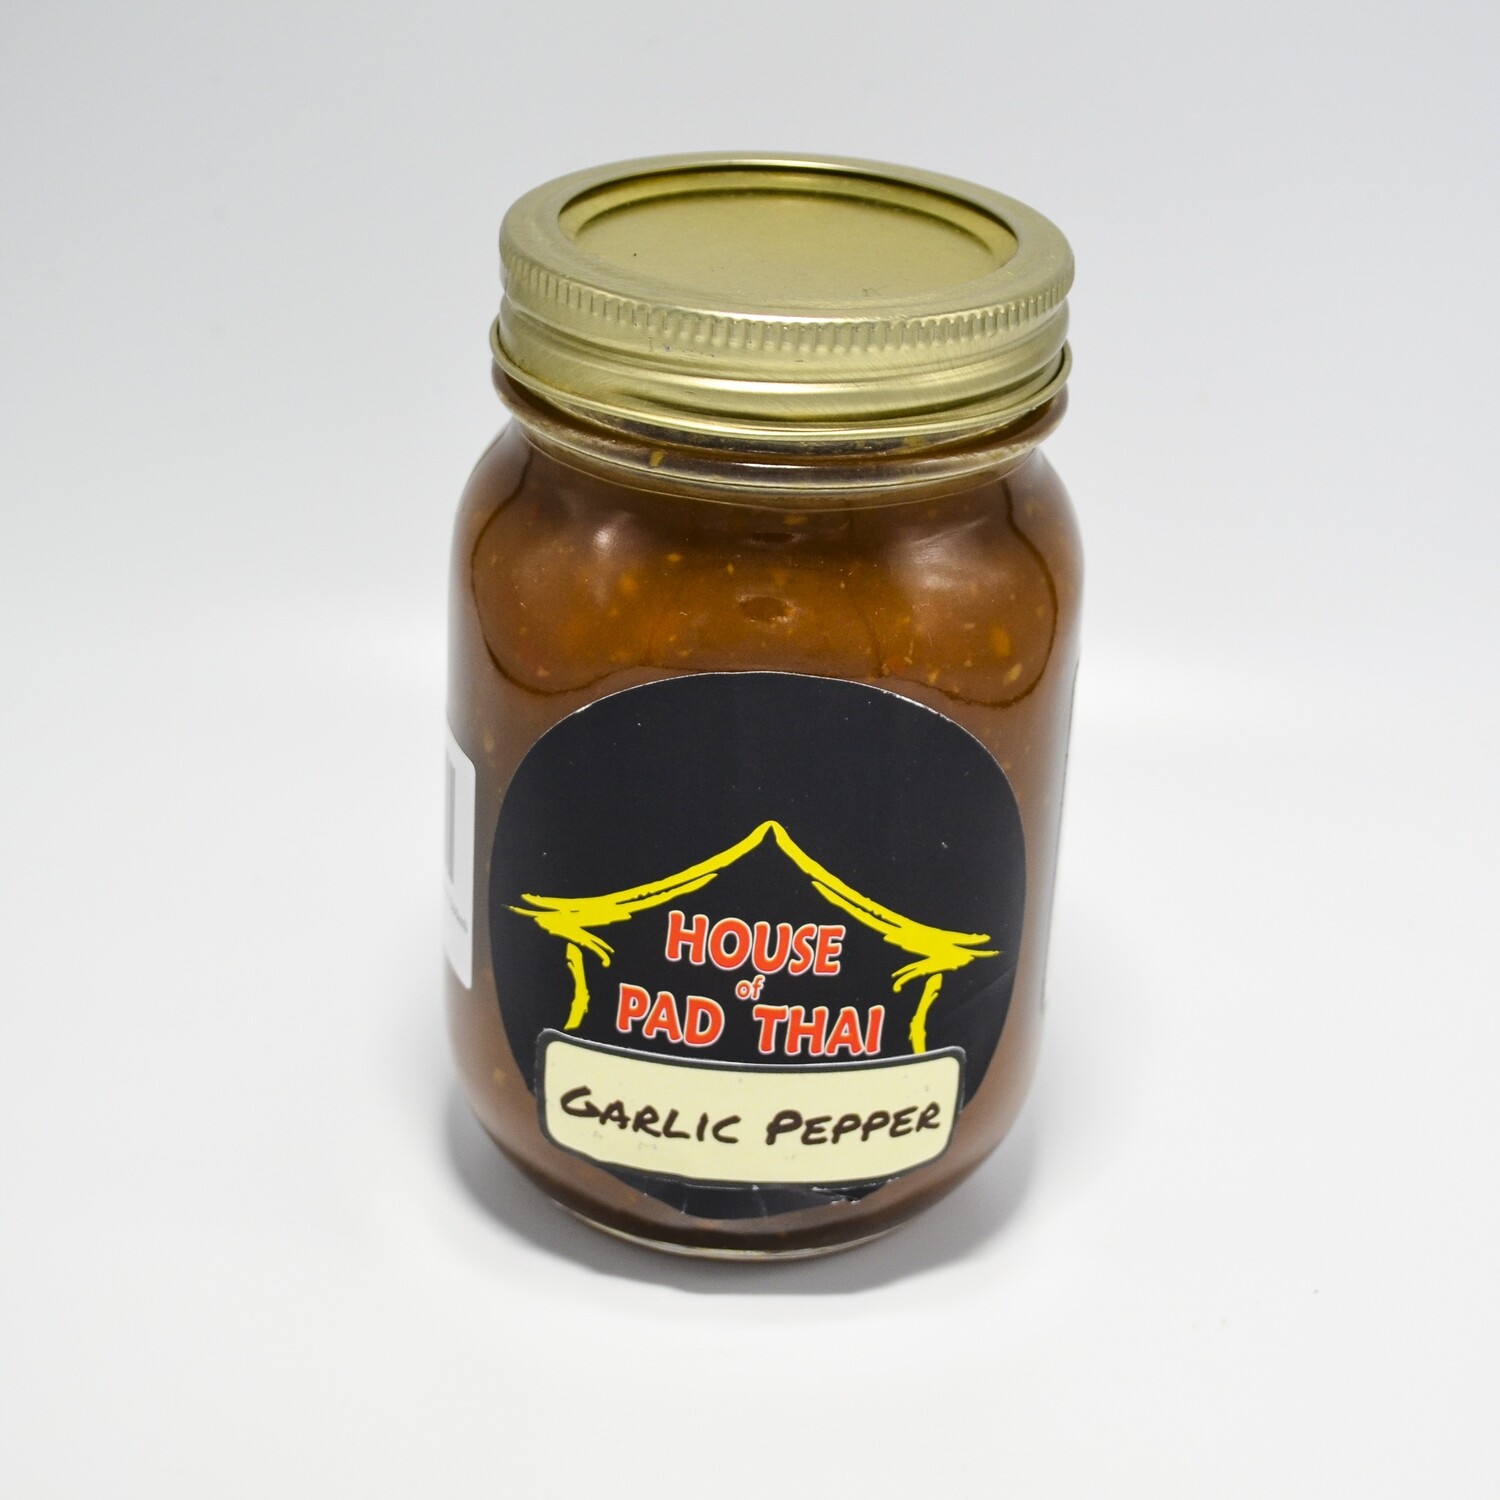 House of Pad Thai - 500ml Garlic Pepper Sauce